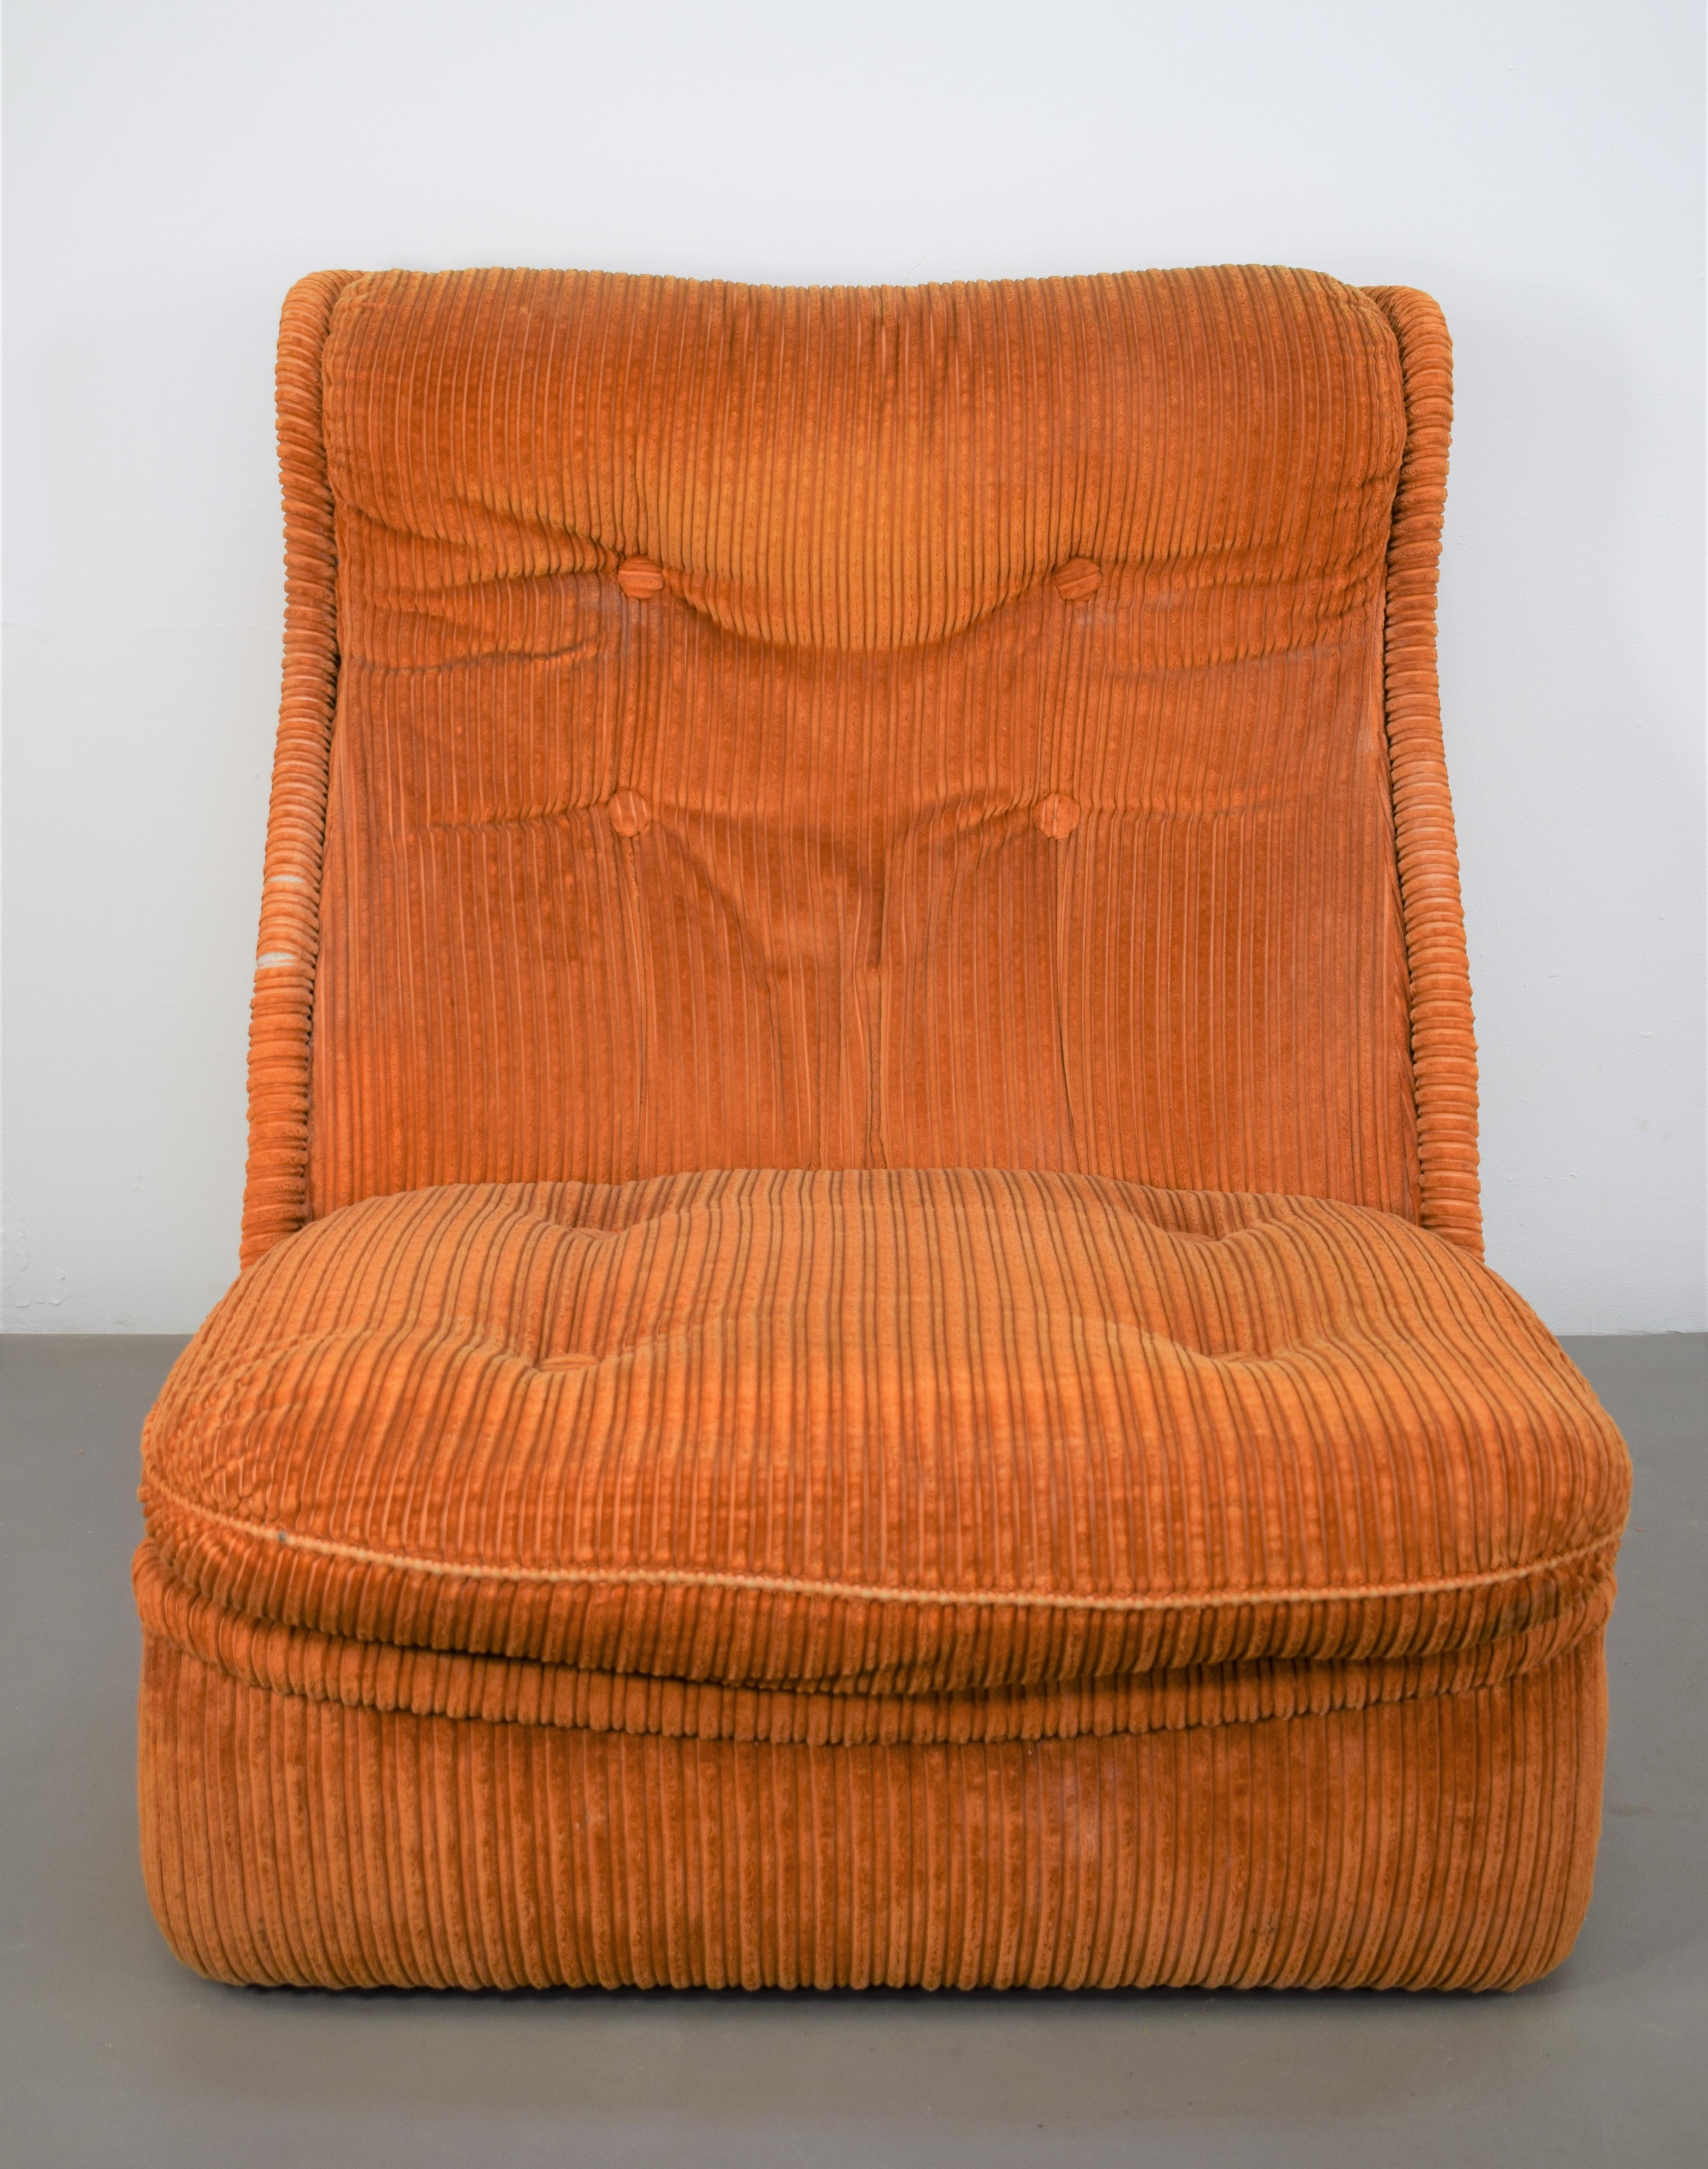 Paire de fauteuils italiens en velours, années 1960.

Dimensions : H= 88 cm ; L= 82 cm ; P= 105 cm ; H S= 40 cm : H= 88 cm ; L= 82 cm ; P= 105 cm ; H S= 40 cm.